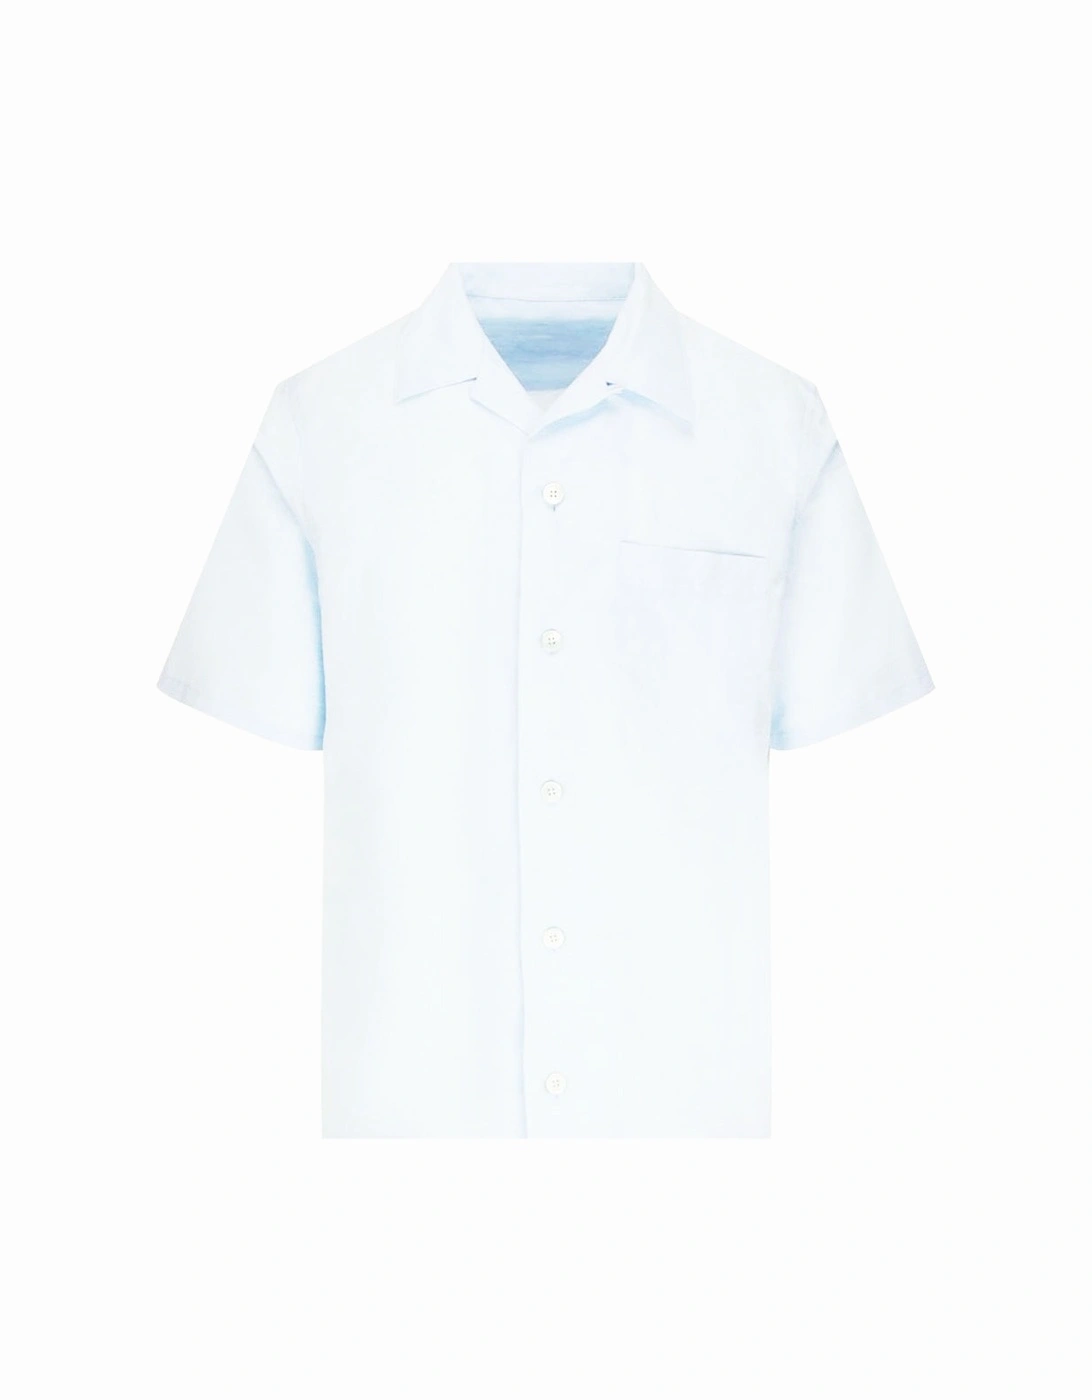 Men's Half Sleeved Shirt White, 3 of 2